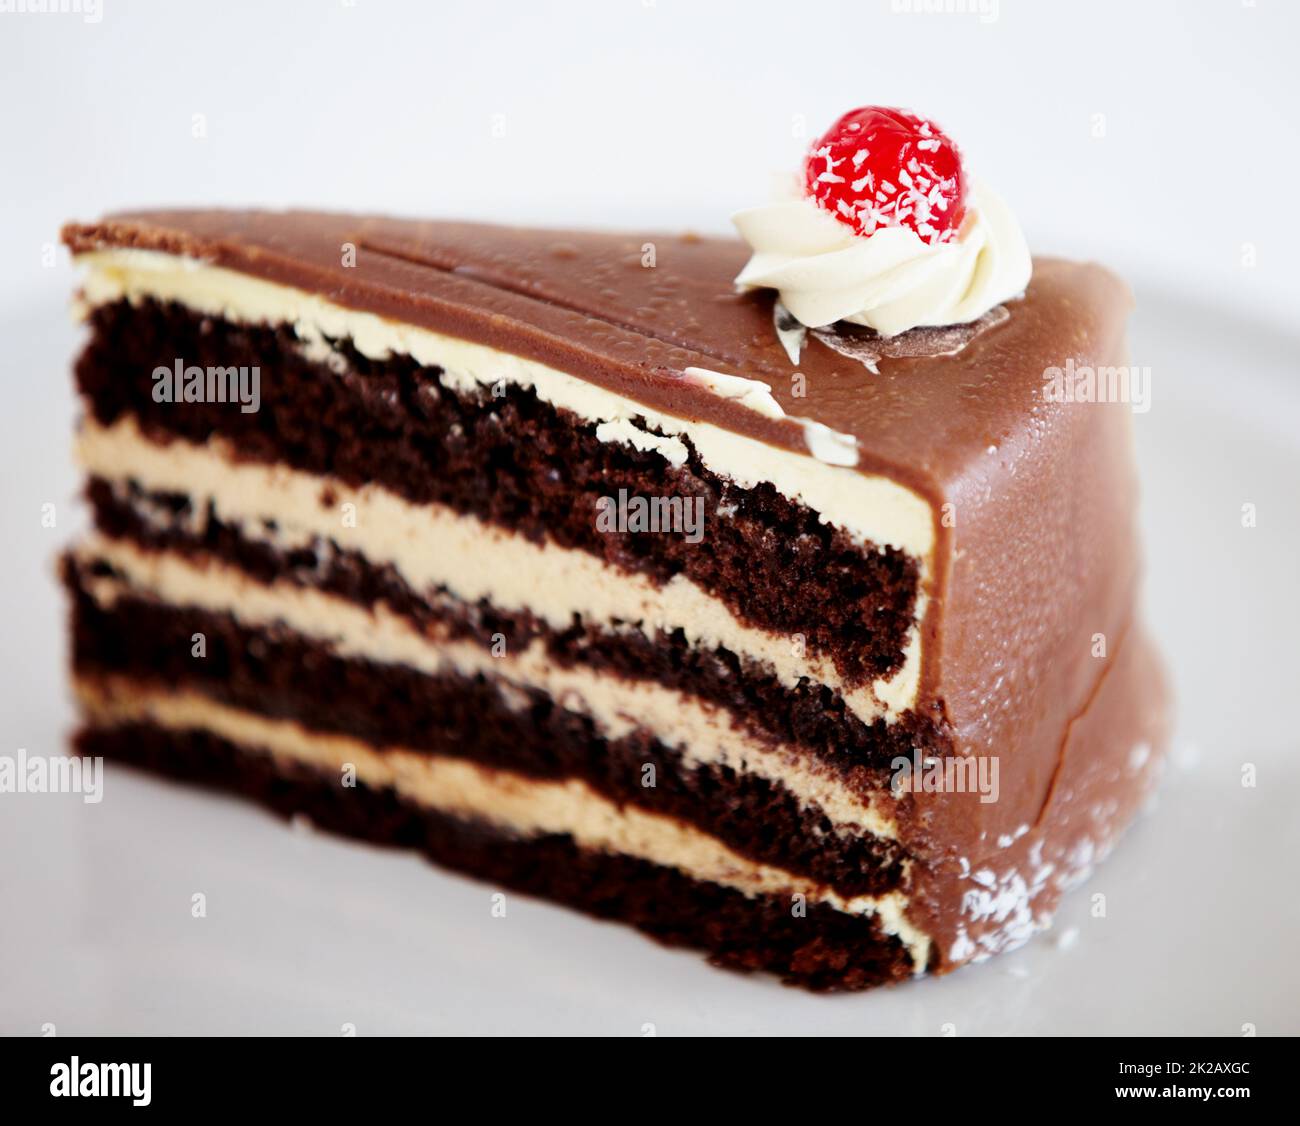 Dekadenz personifiziert. Ein Stück köstlicher Schokoladenkuchen auf einem weißen Teller. Stockfoto